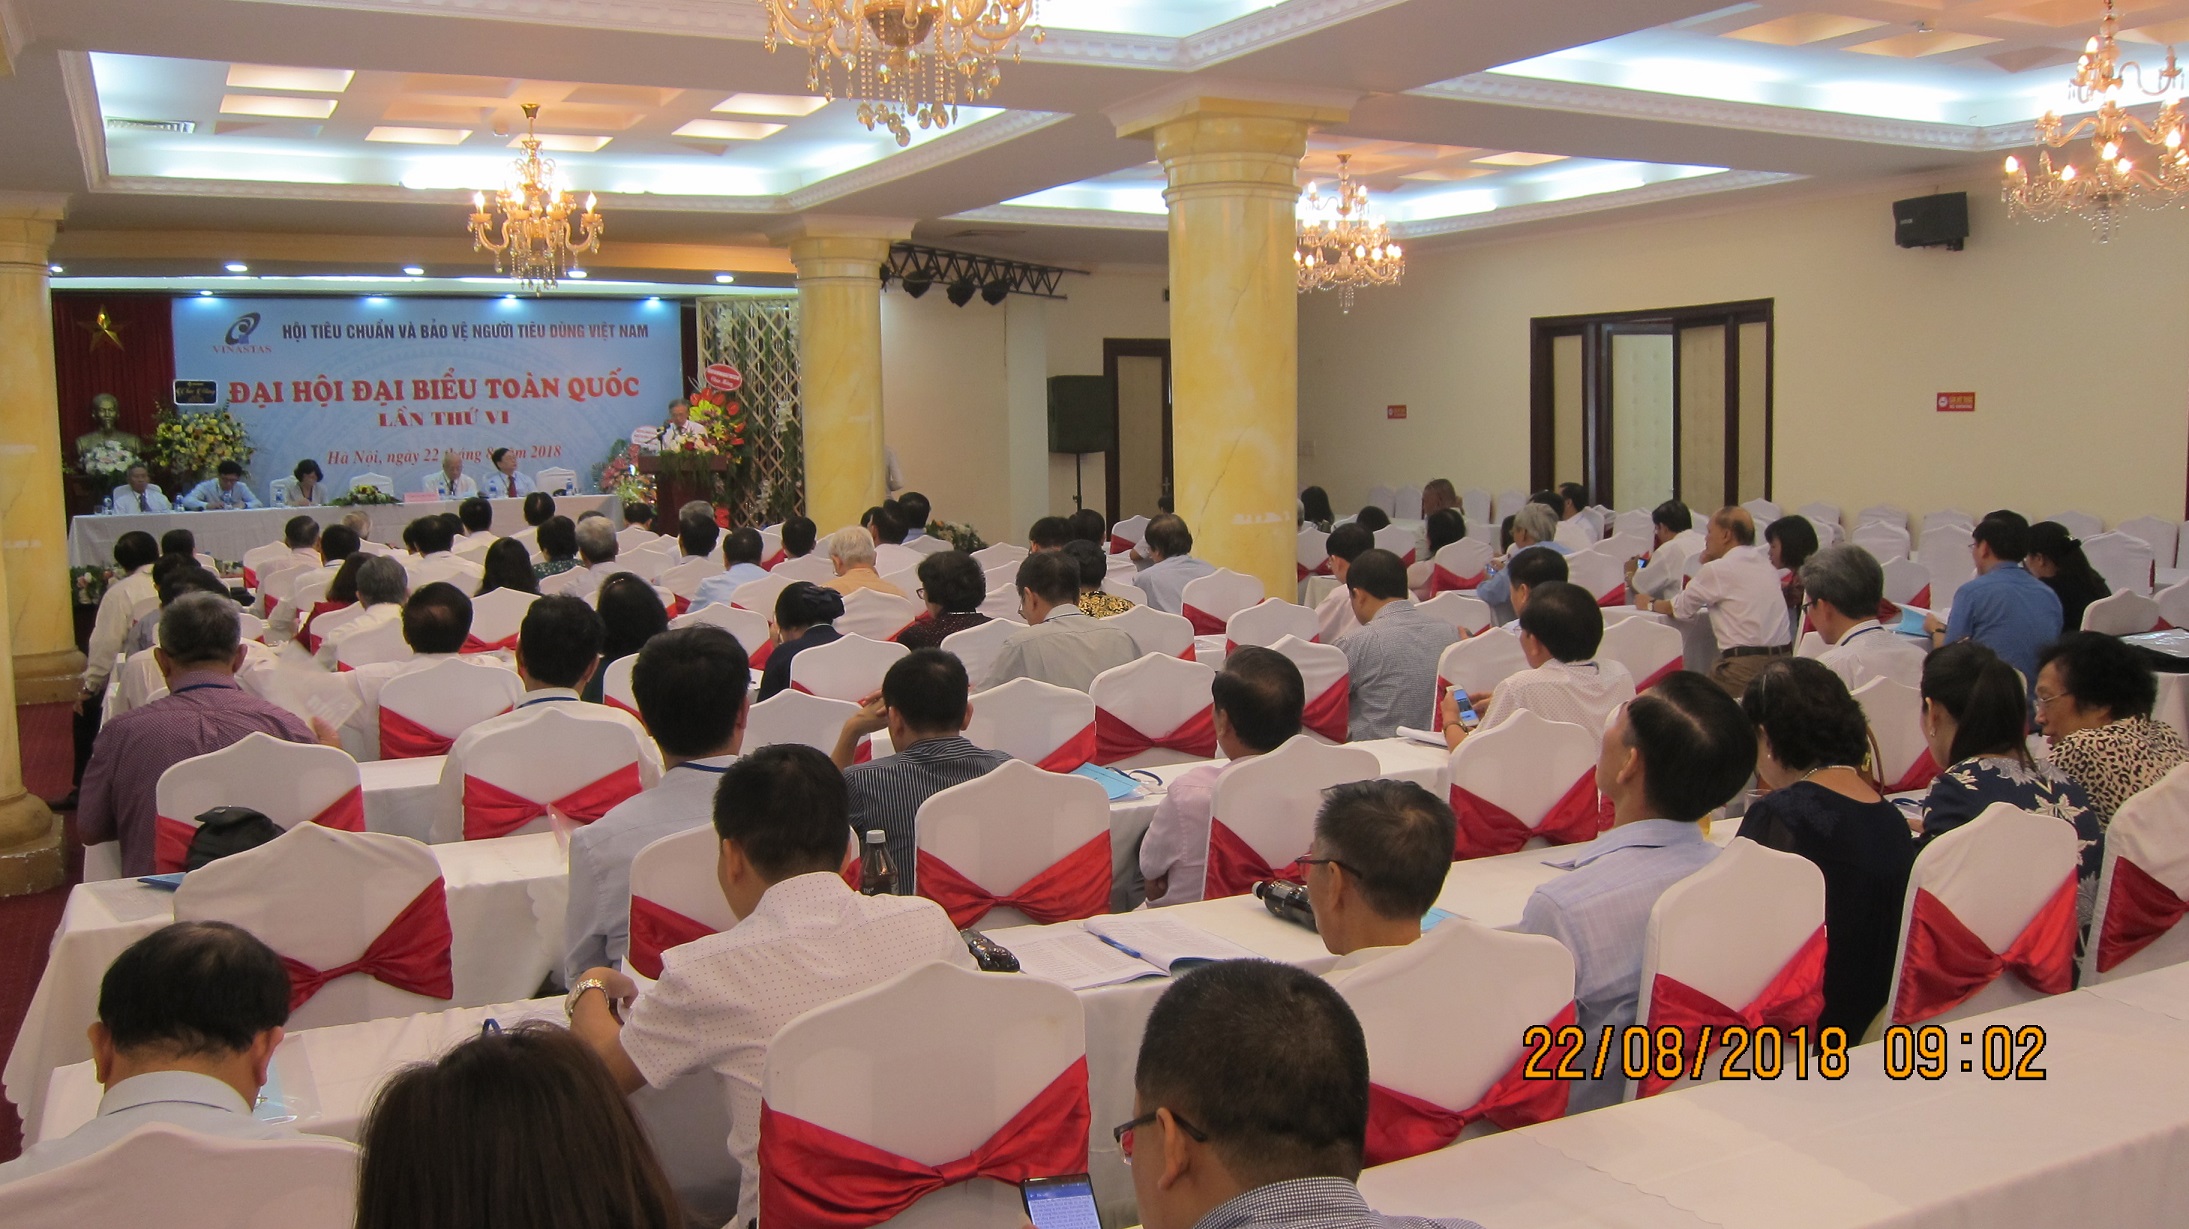 Đại hội đại biểu toàn quốc Hội Tiêu chuẩn và Bảo vệ người tiêu dùng Việt Nam